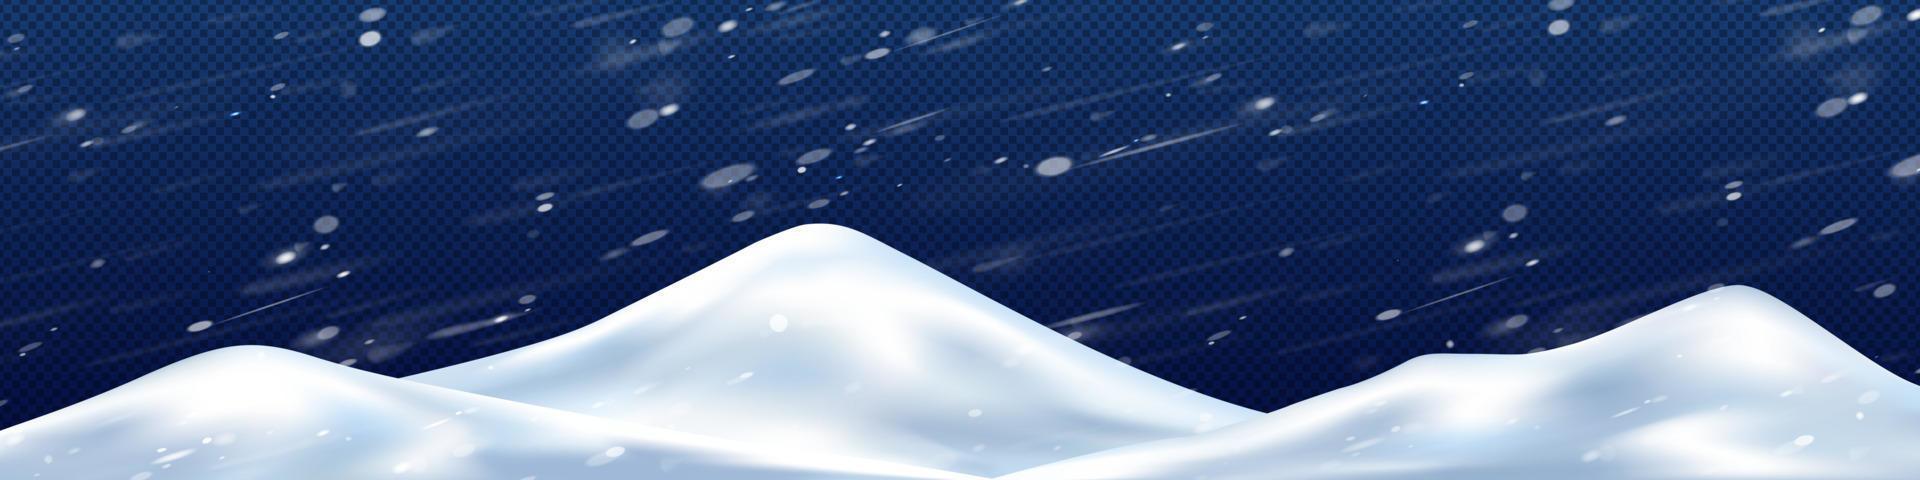 emorroidi di neve nel inverno tempesta png, 3d illustrazione vettore